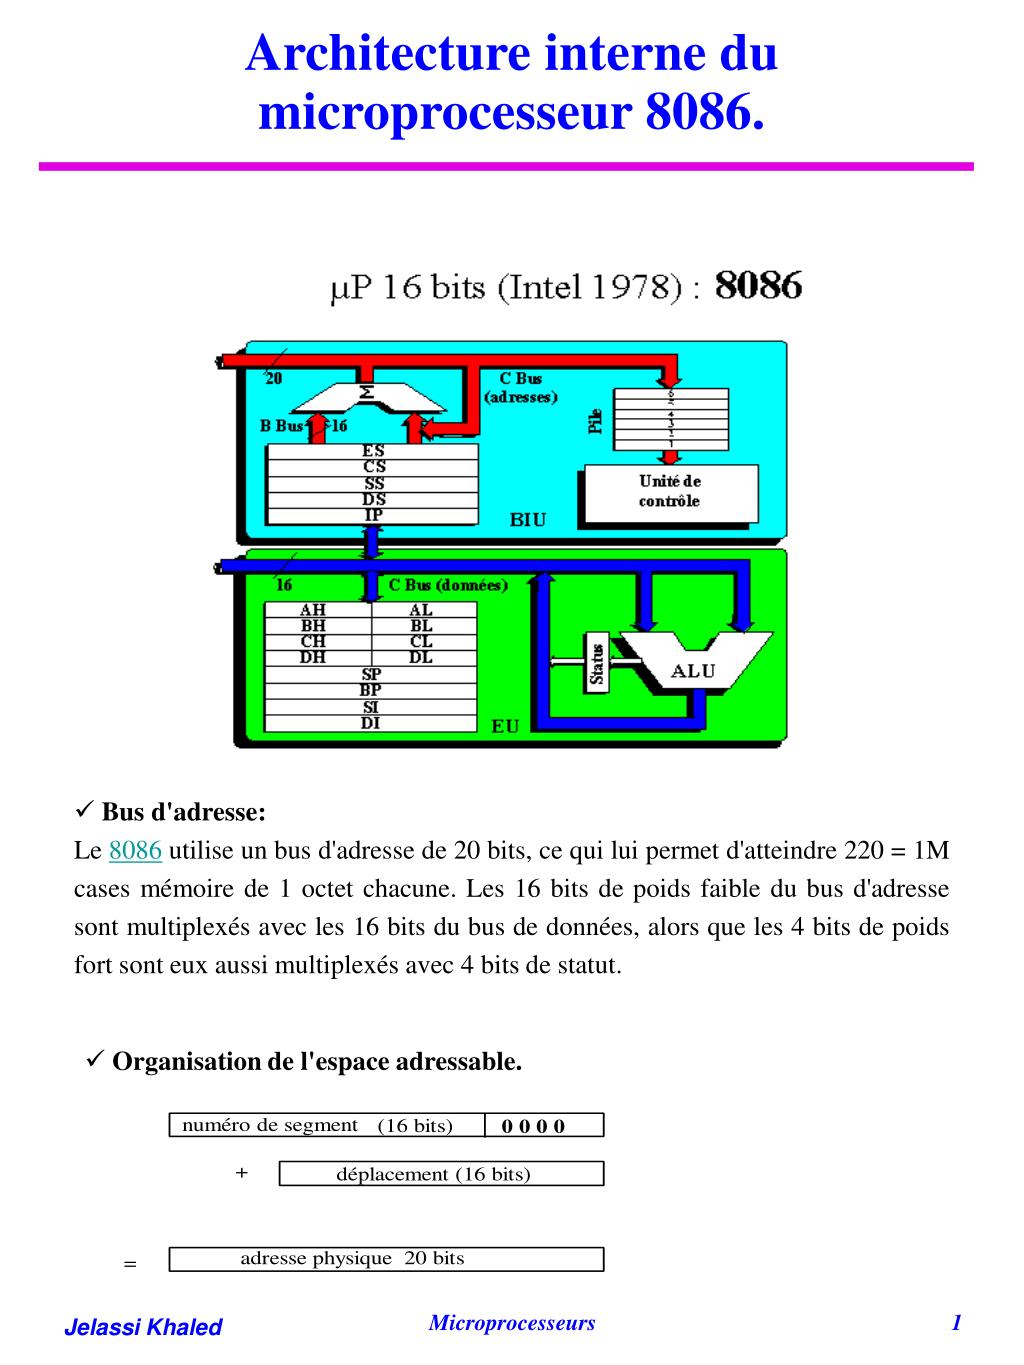 PPT - Architecture interne du microprocesseur 8086. PowerPoint Presentation  - ID:6473960